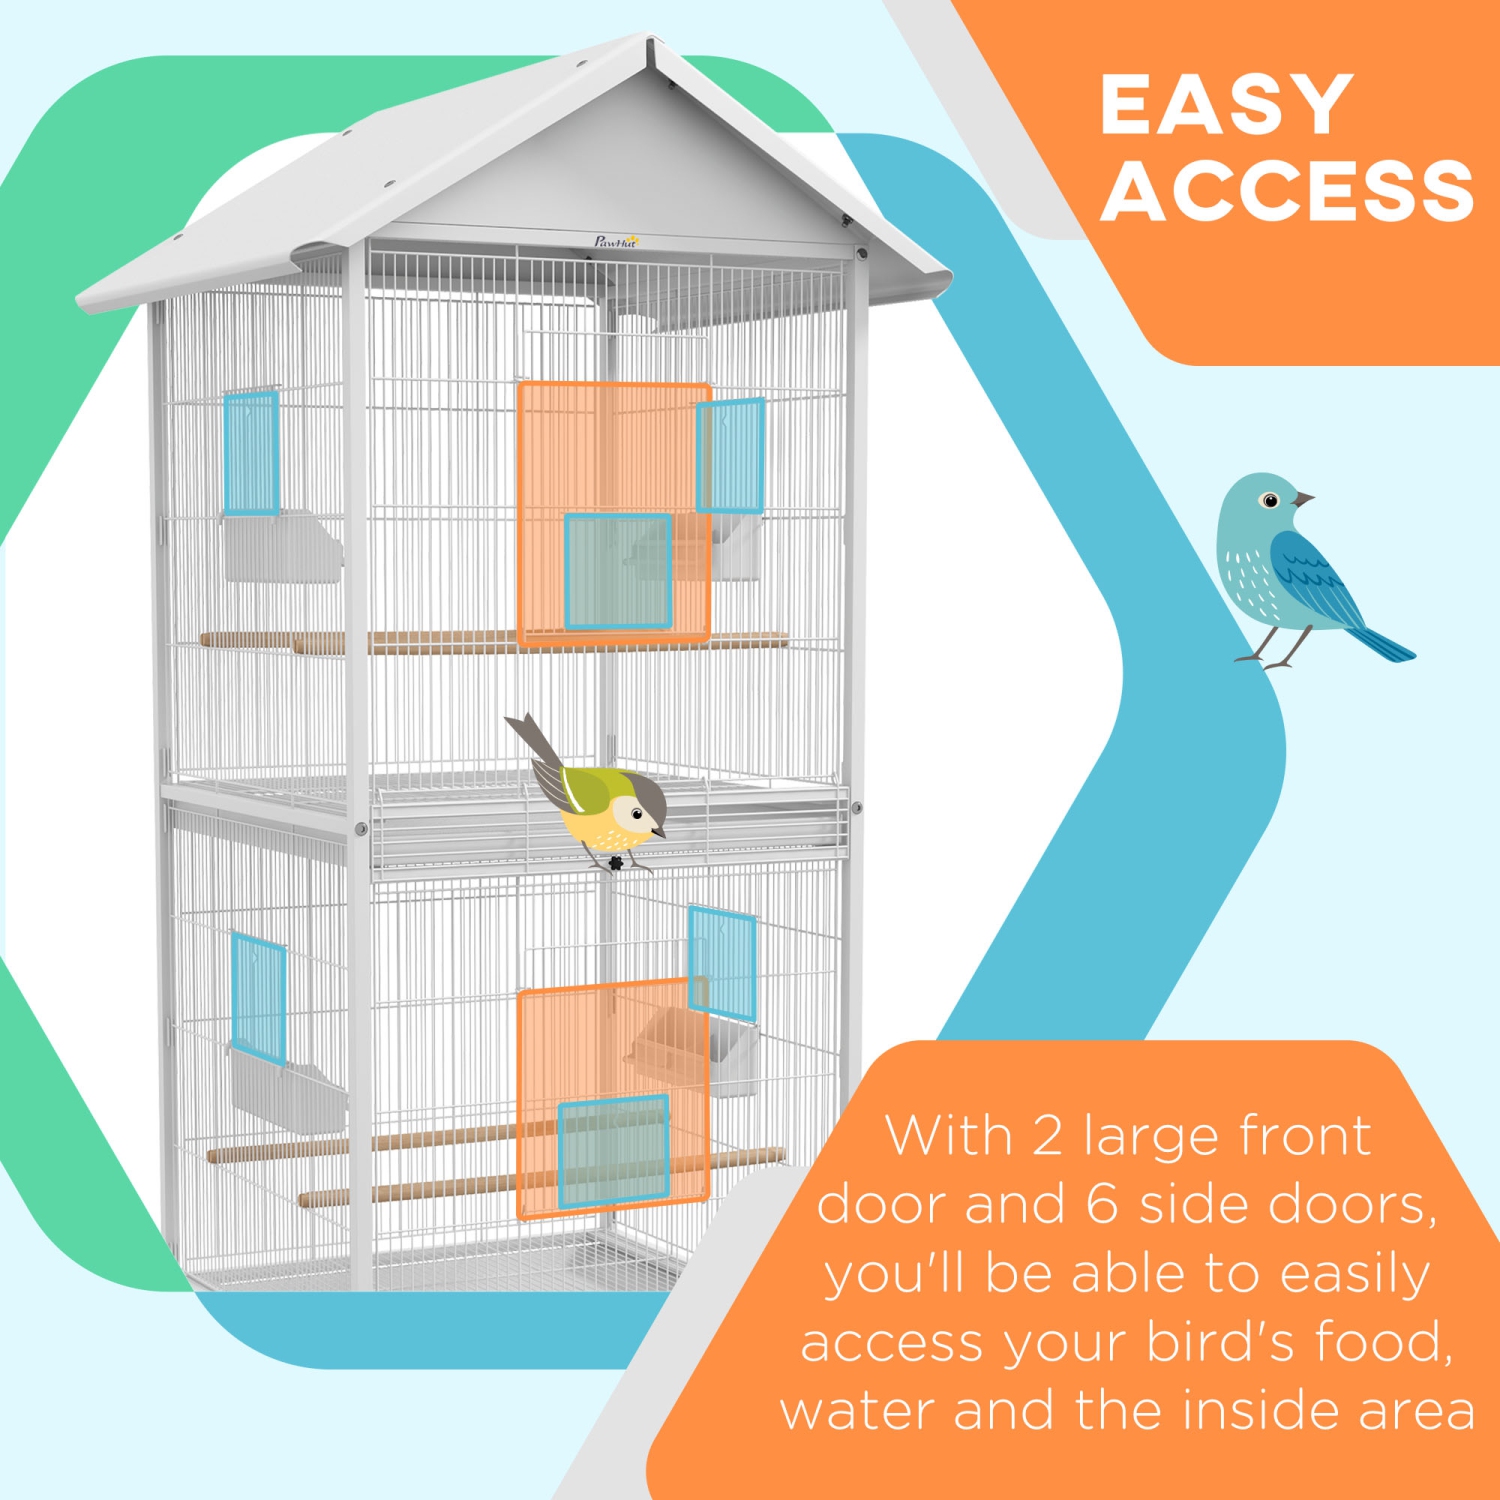 PawHut Mangeoire en métal forgé pour cage à oiseaux avec support